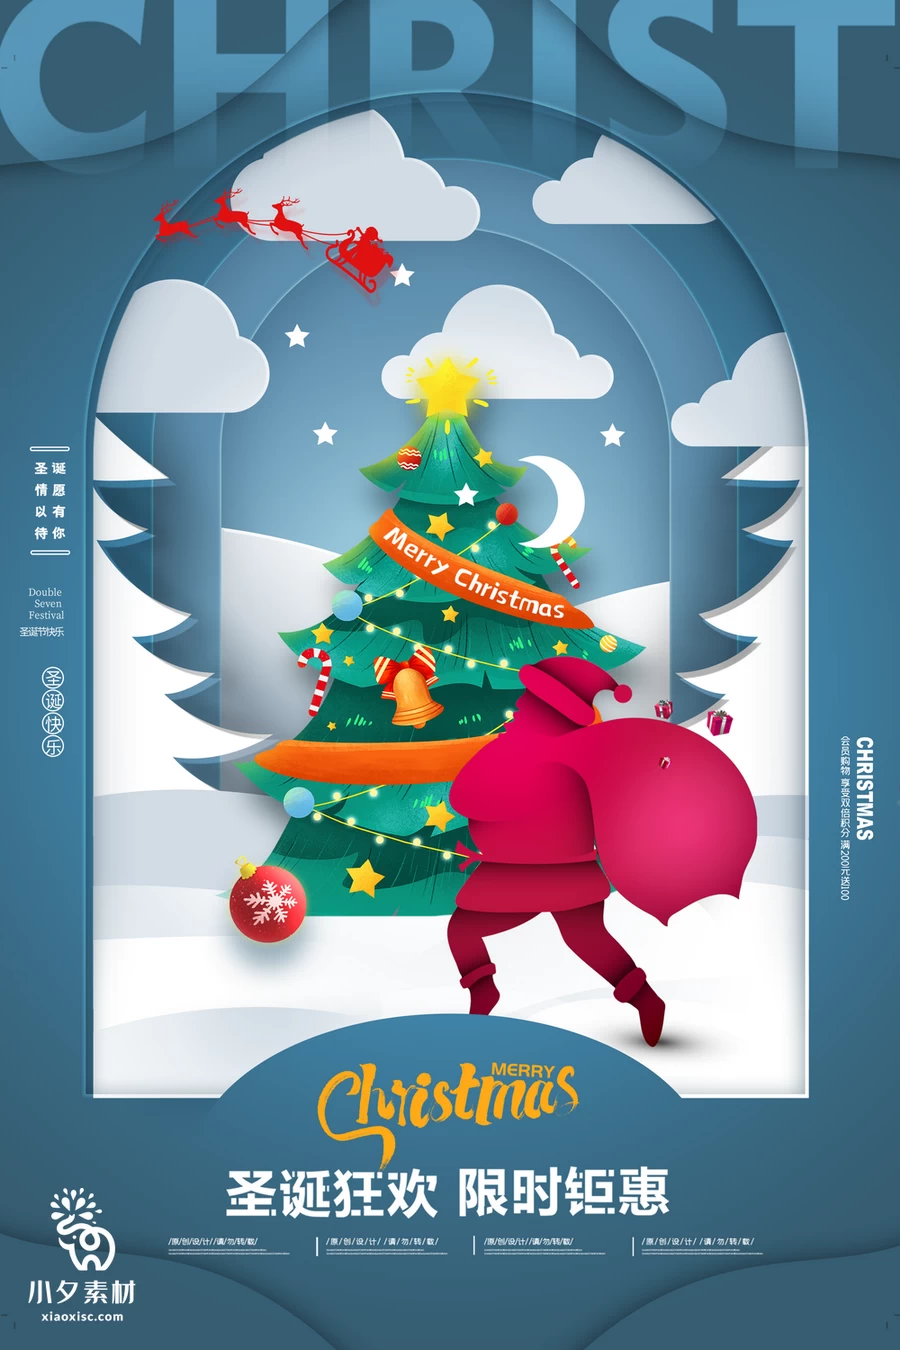 圣诞节节日节庆海报模板PSD分层设计素材【021】